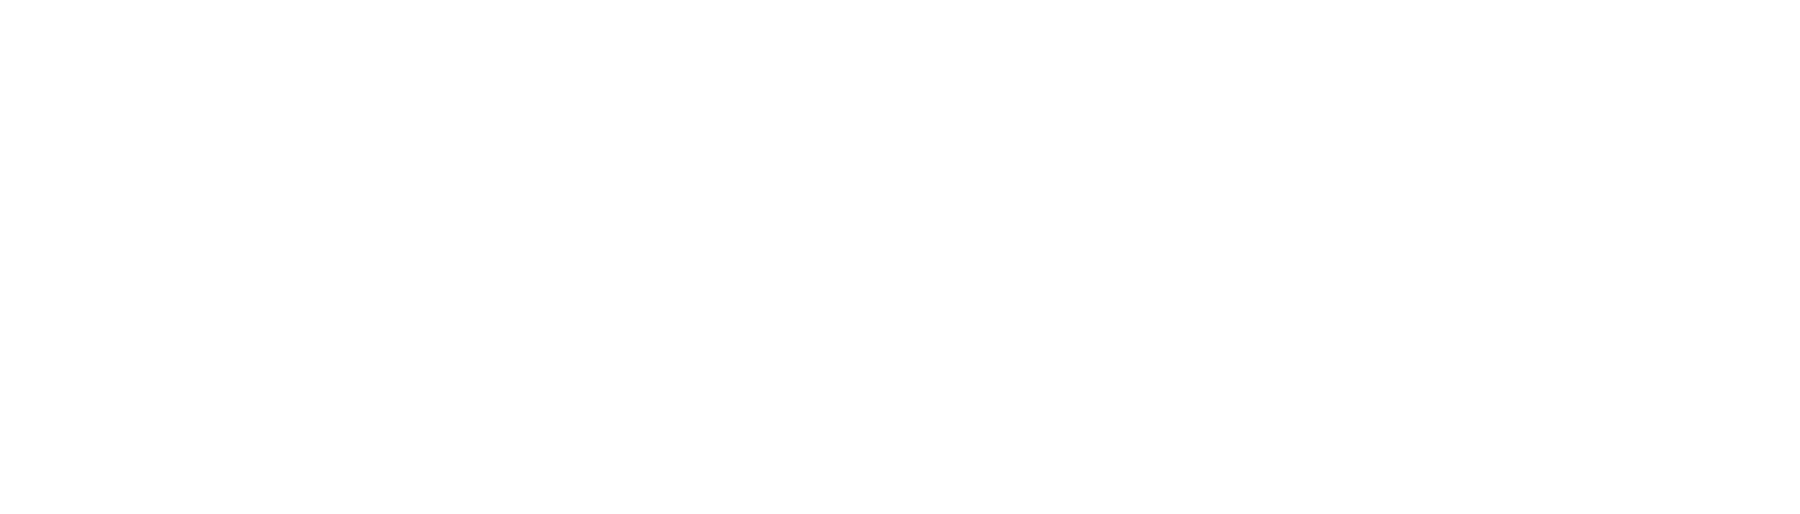 Bravo Pizza and Chicken - CLOSED